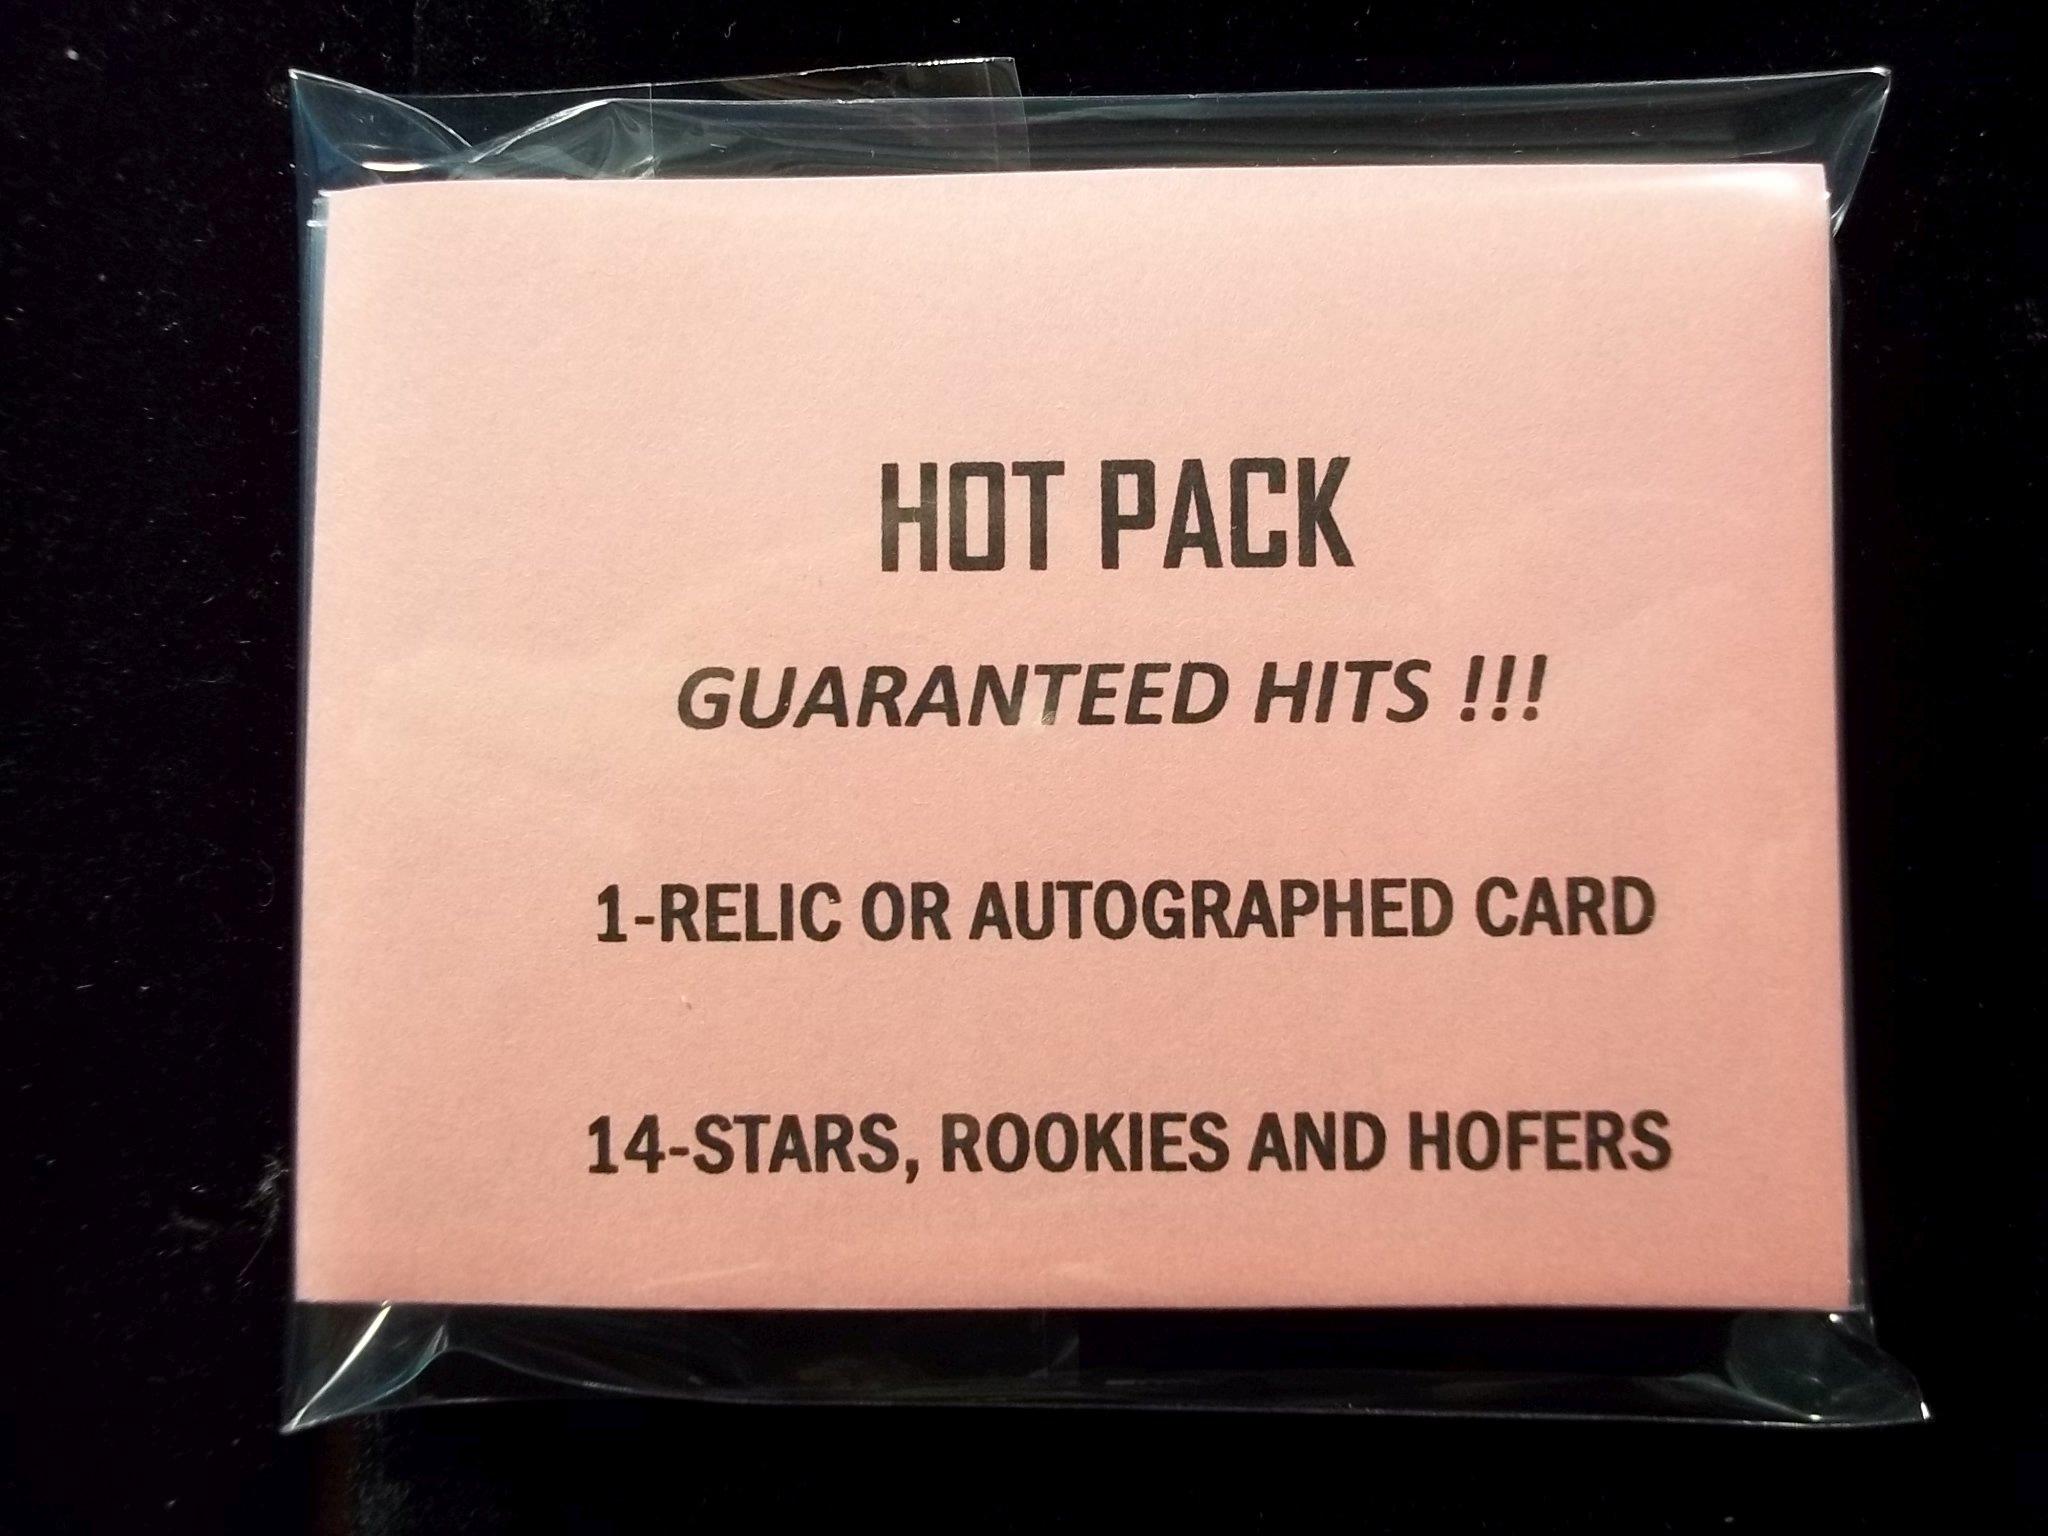 Hot Pack Guaranteed Hits!!!